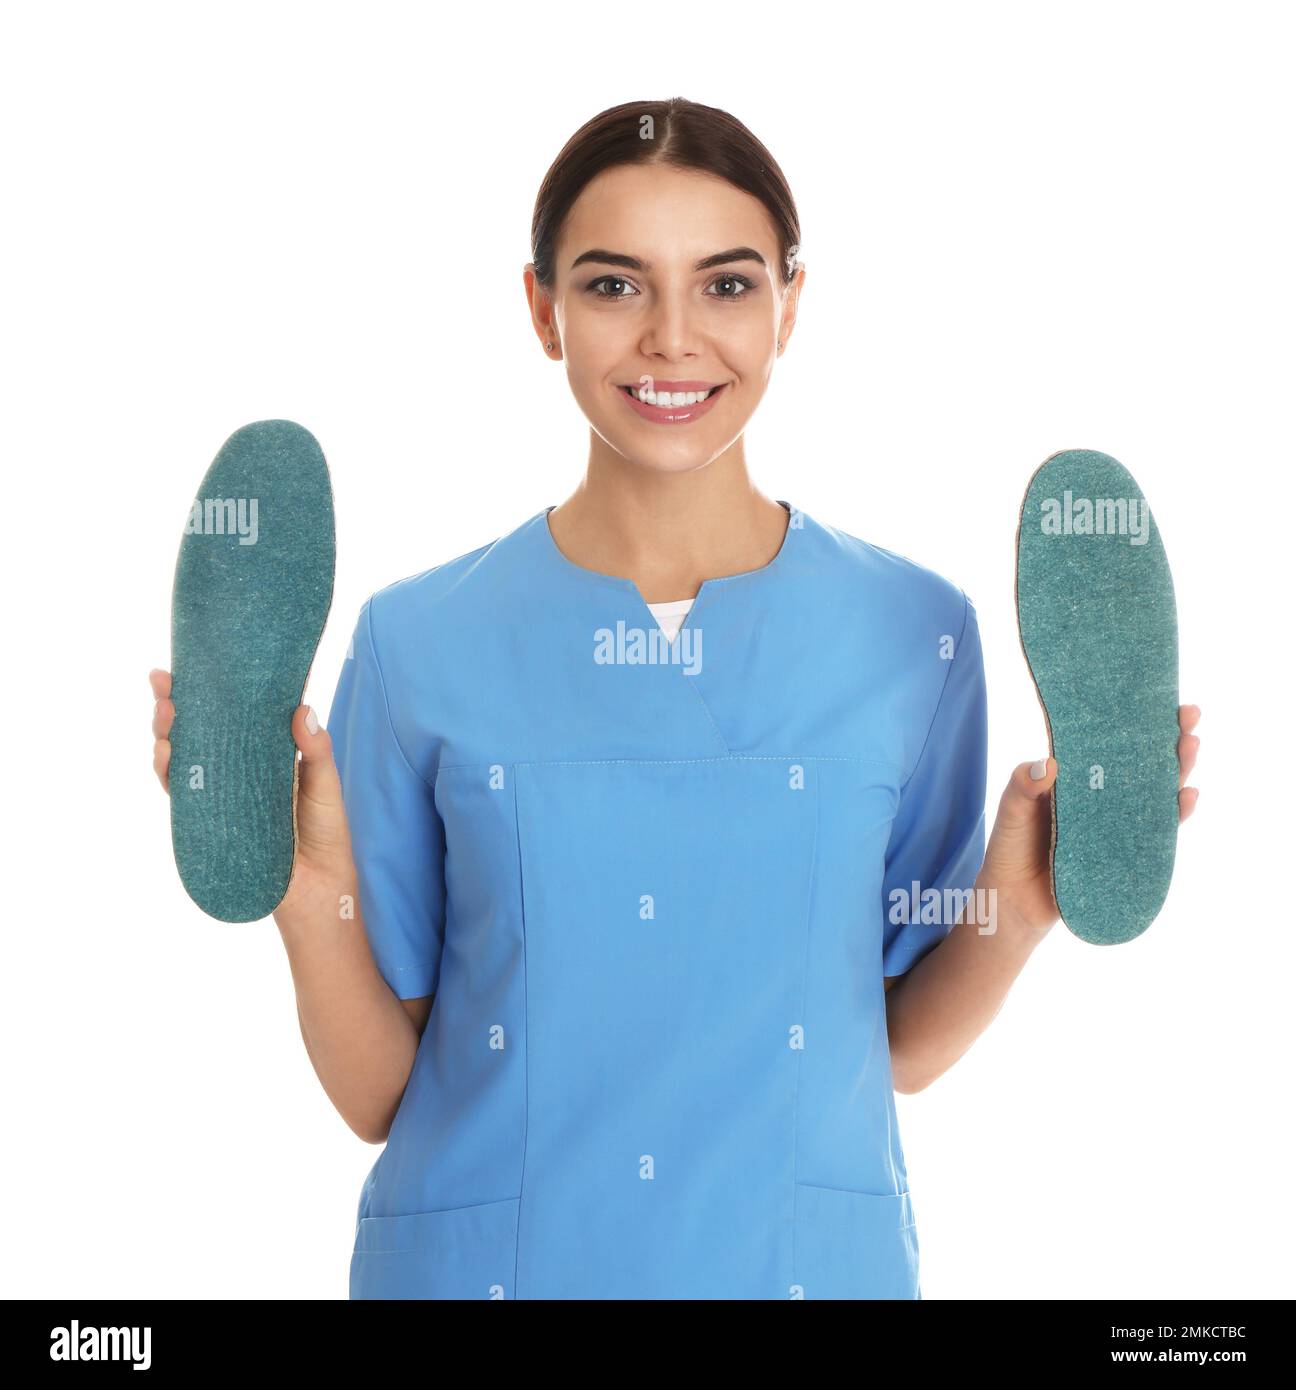 Female orthopedist showing insoles on white background Stock Photo - Alamy